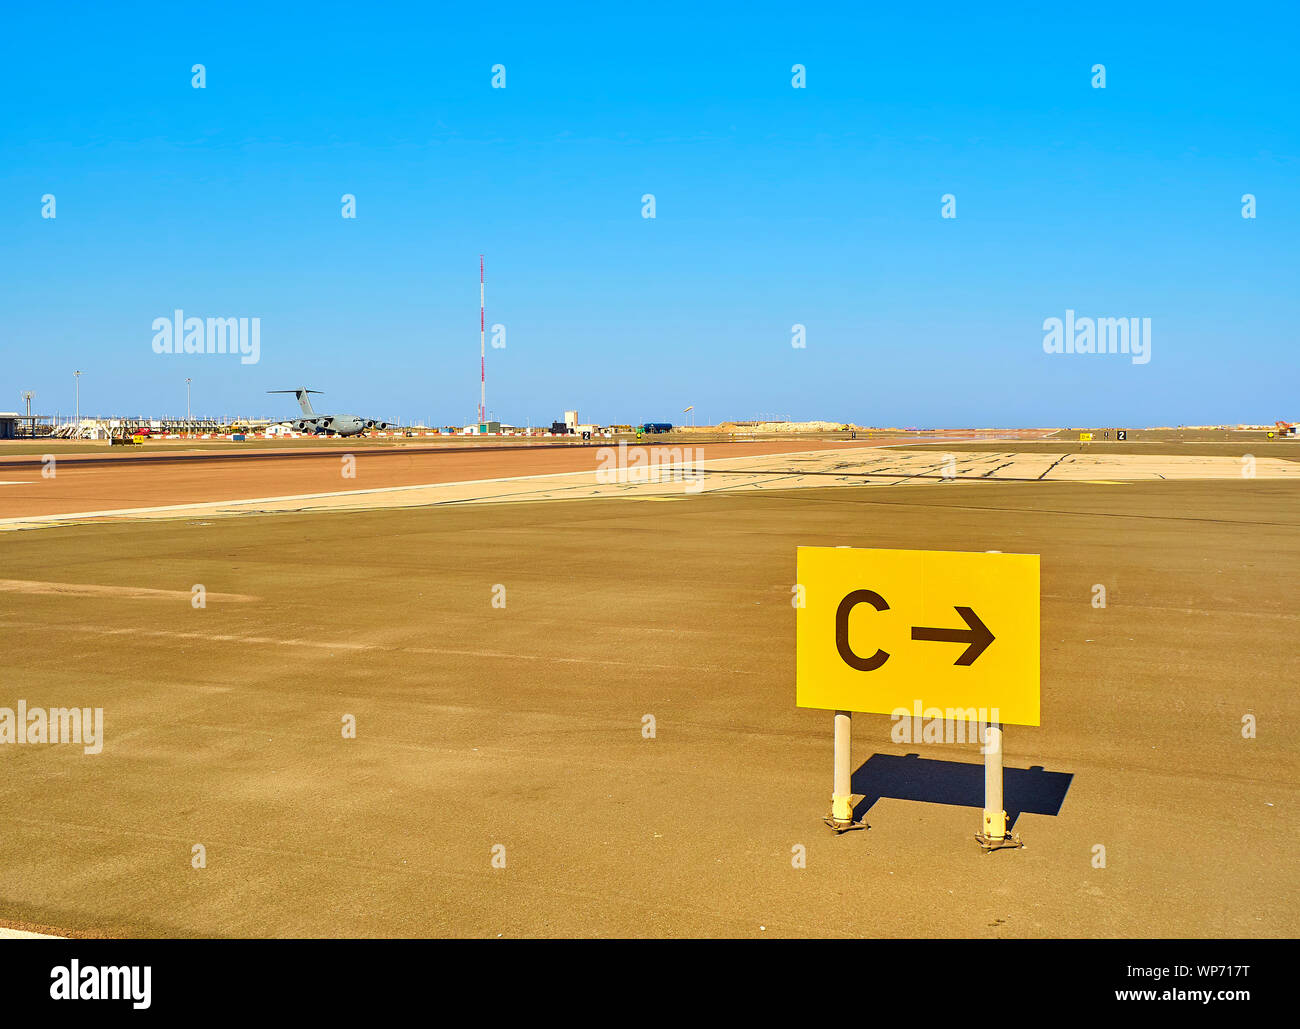 Eine Landebahn eines Flughafens mit einer militärischen Flugzeug im Hintergrund und einem rollweg Lage Zeichen im Vordergrund. Stockfoto